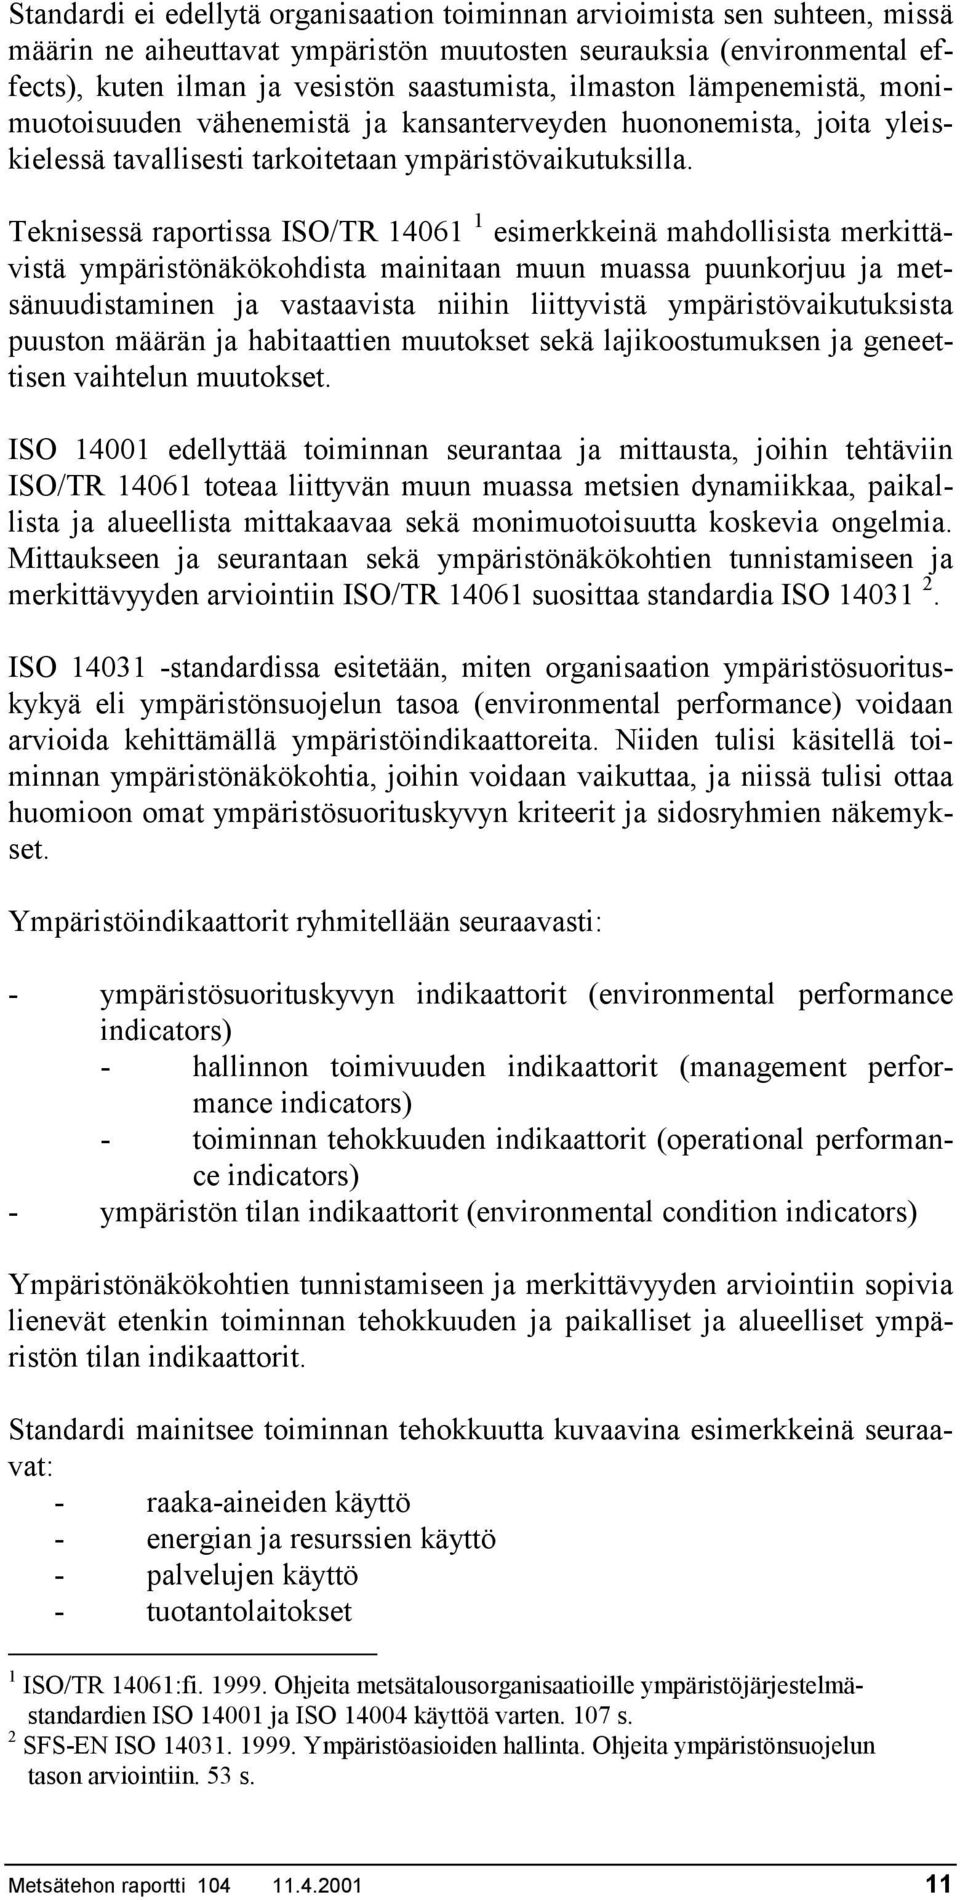 Teknisessä raportissa ISO/TR 14061 1 esimerkkeinä mahdollisista merkittävistä ympäristönäkökohdista mainitaan muun muassa puunkorjuu ja metsänuudistaminen ja vastaavista niihin liittyvistä